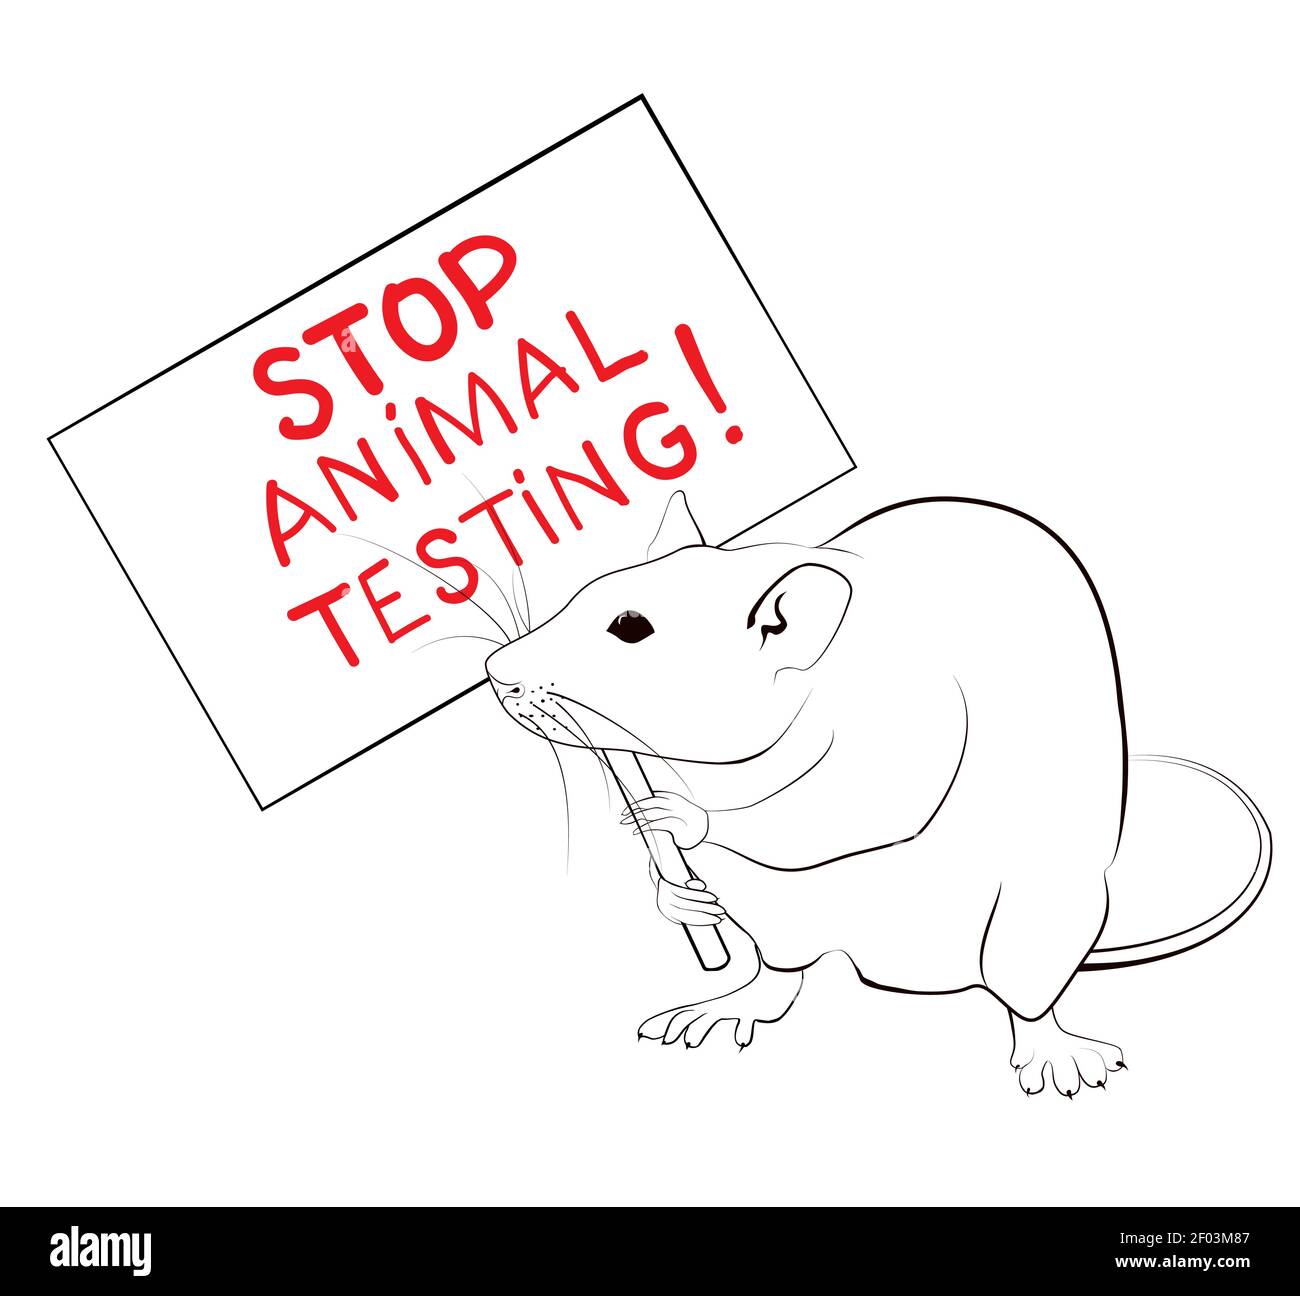 Le rat proteste et tient une bannière contre les essais sur les animaux. Concept d'arrêt de la cruauté des dessins au trait.Illustration vectorielle. Illustration de Vecteur